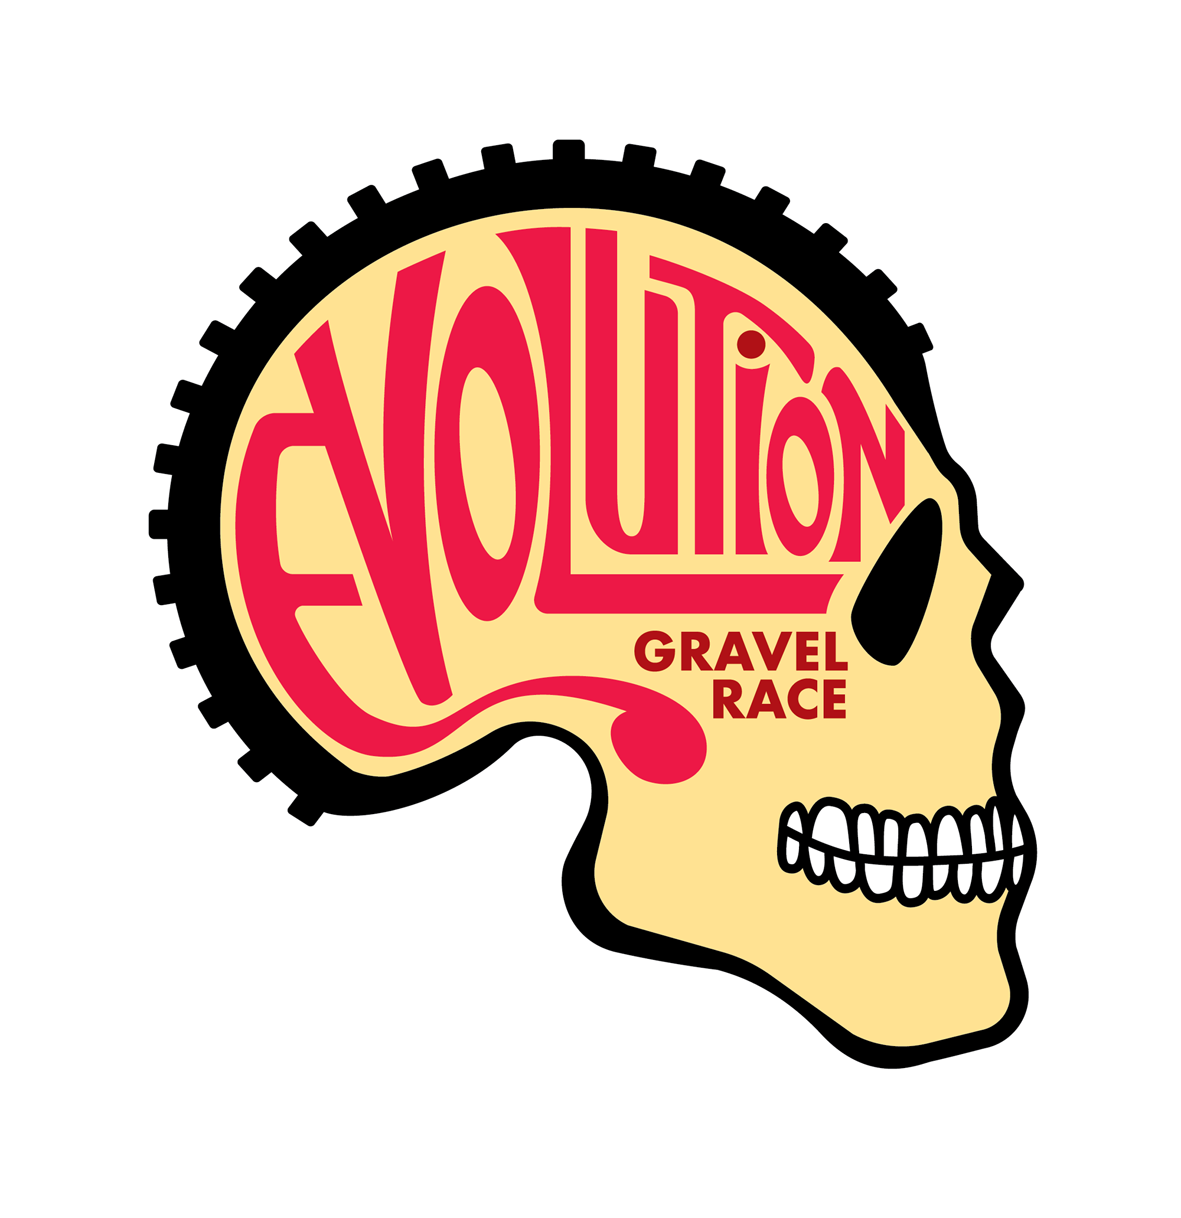 Evolution Gravel Race